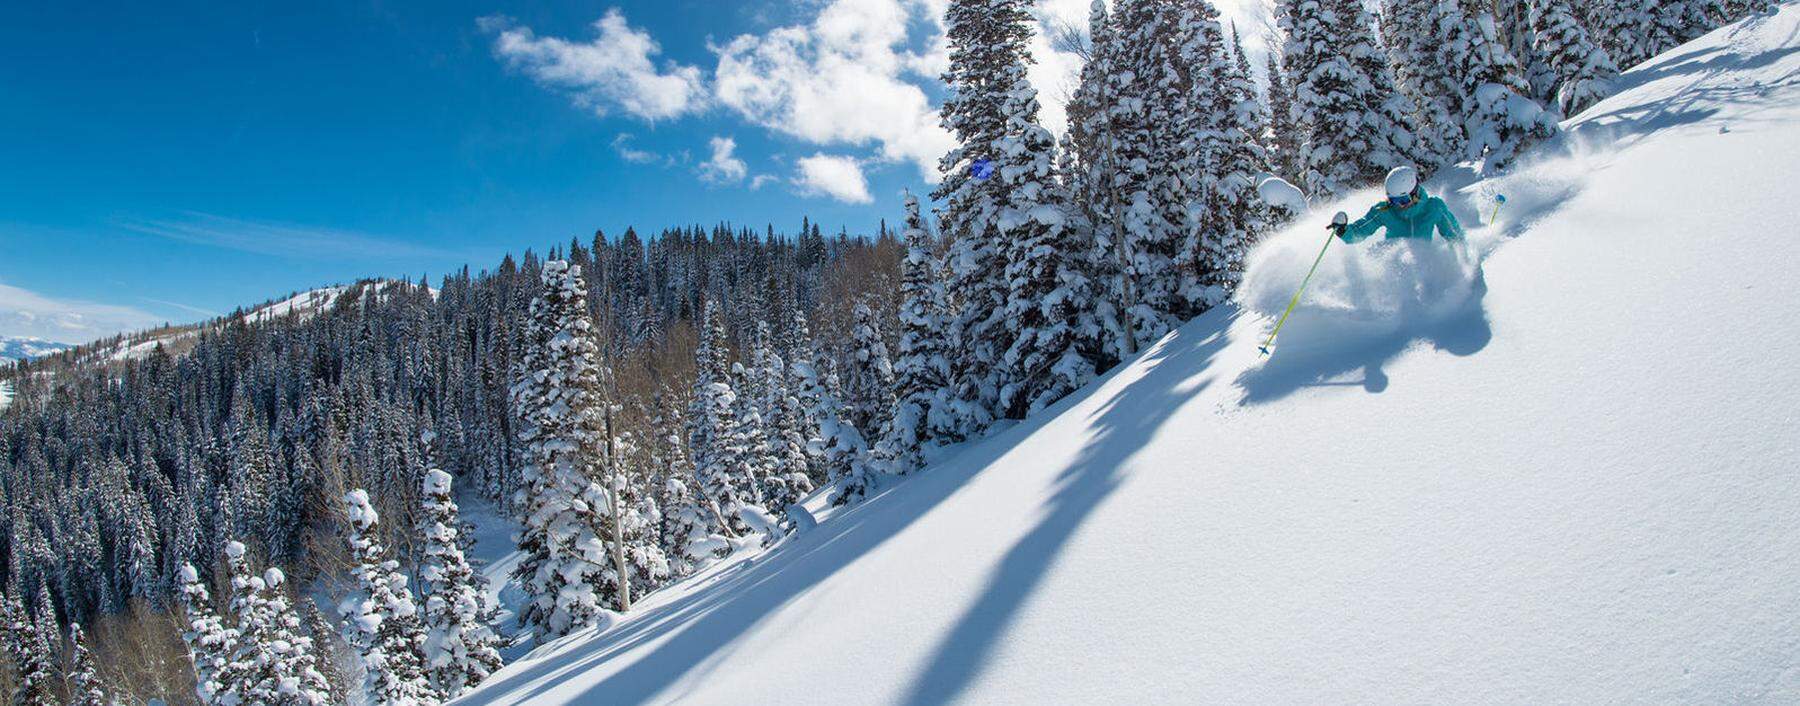 Skifahren in Utah: Auch da geht's zum Powdern in die Backbowls.